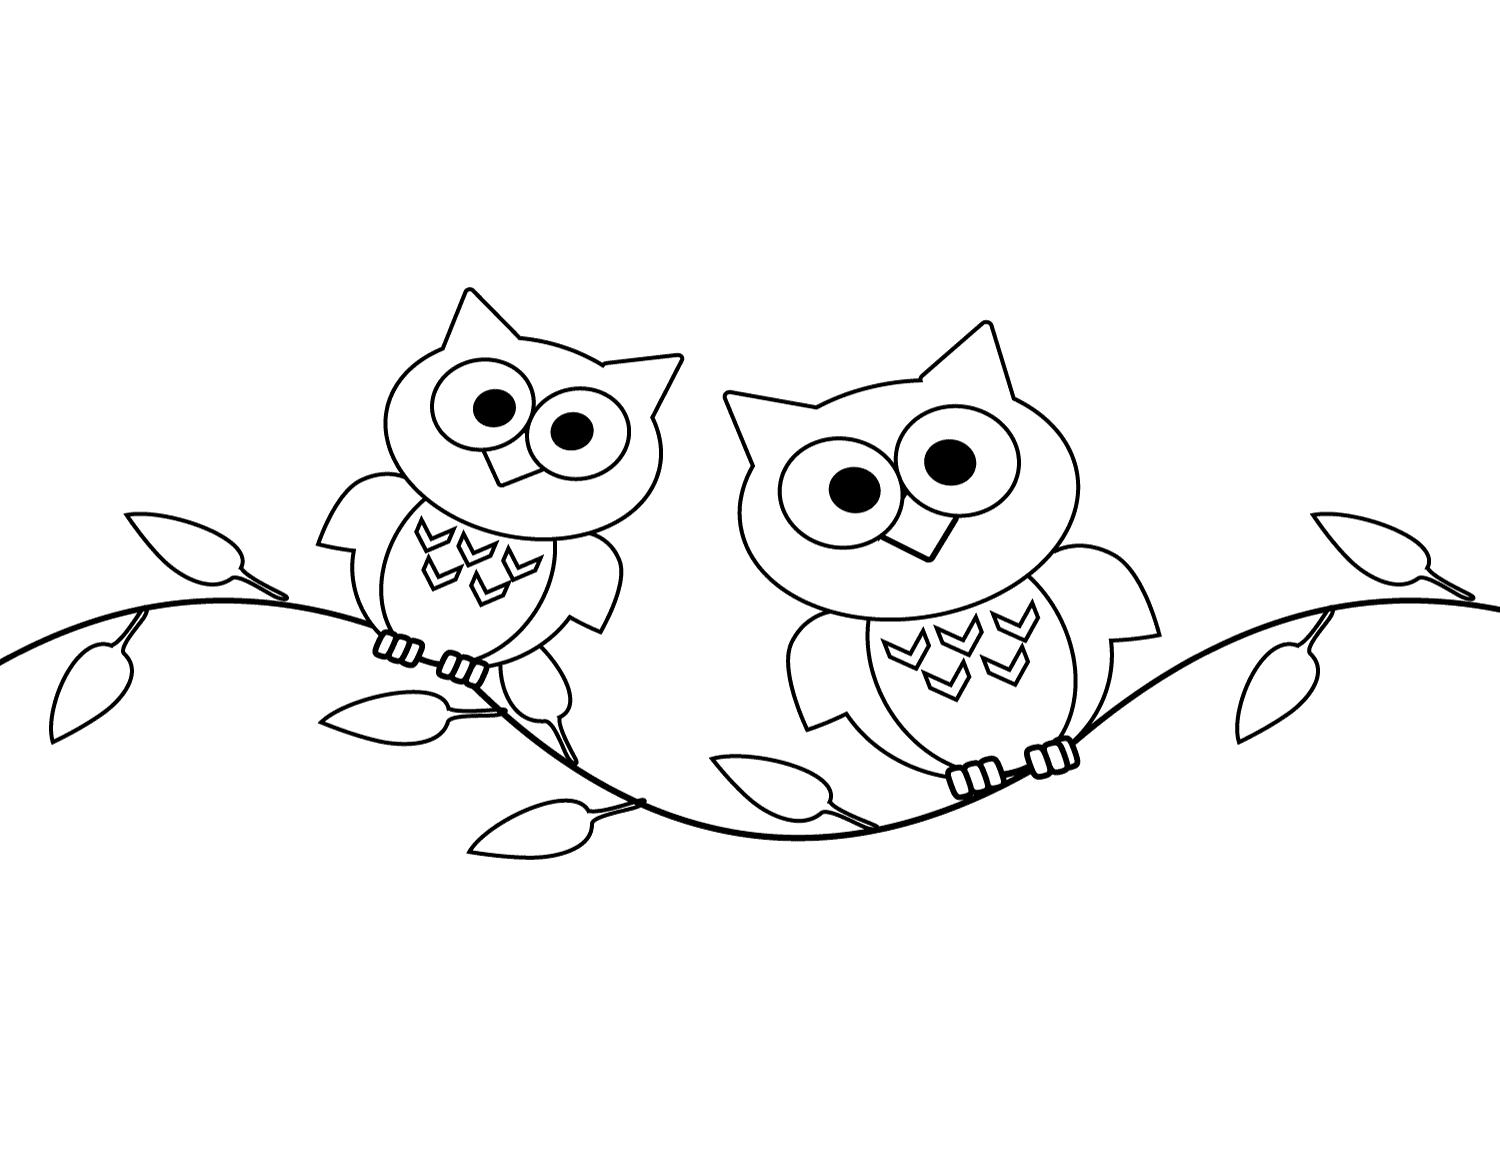 Zwei Eulen auf dem Baum von Owl